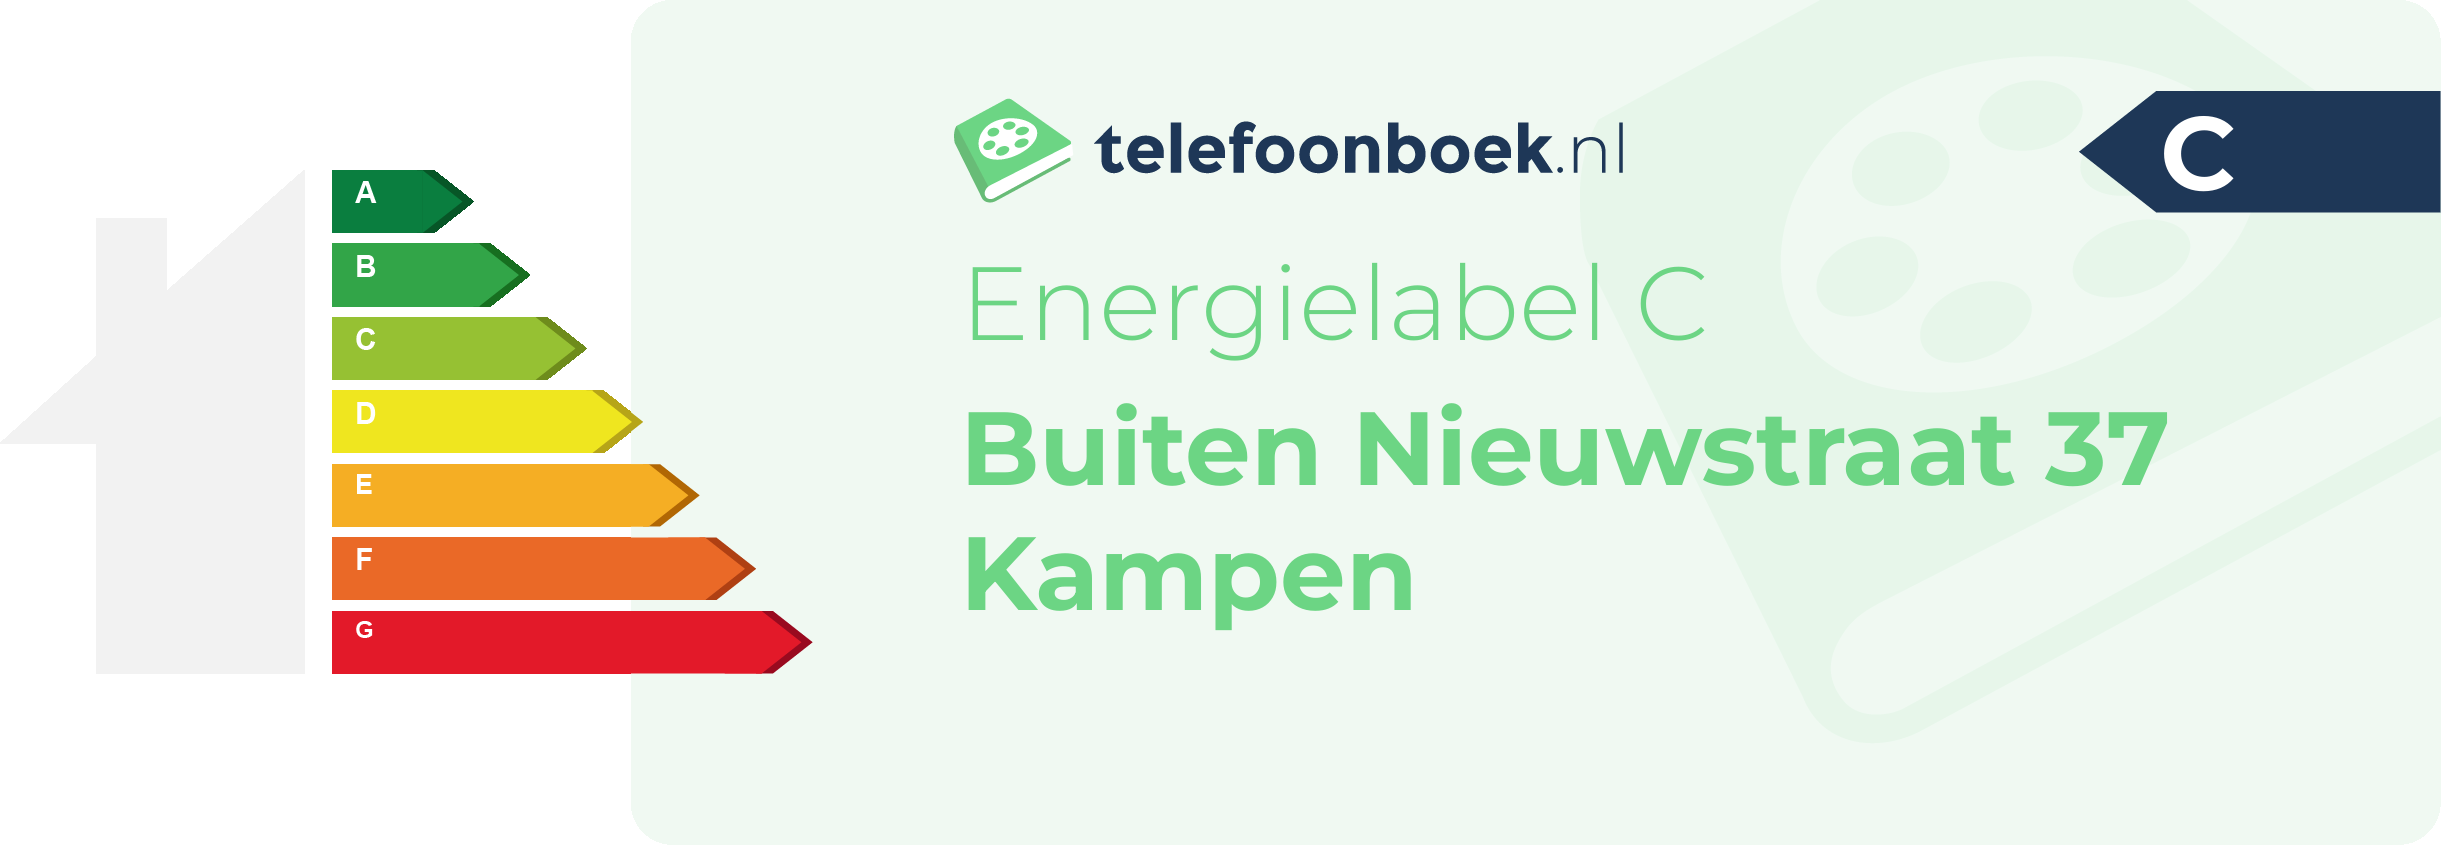 Energielabel Buiten Nieuwstraat 37 Kampen